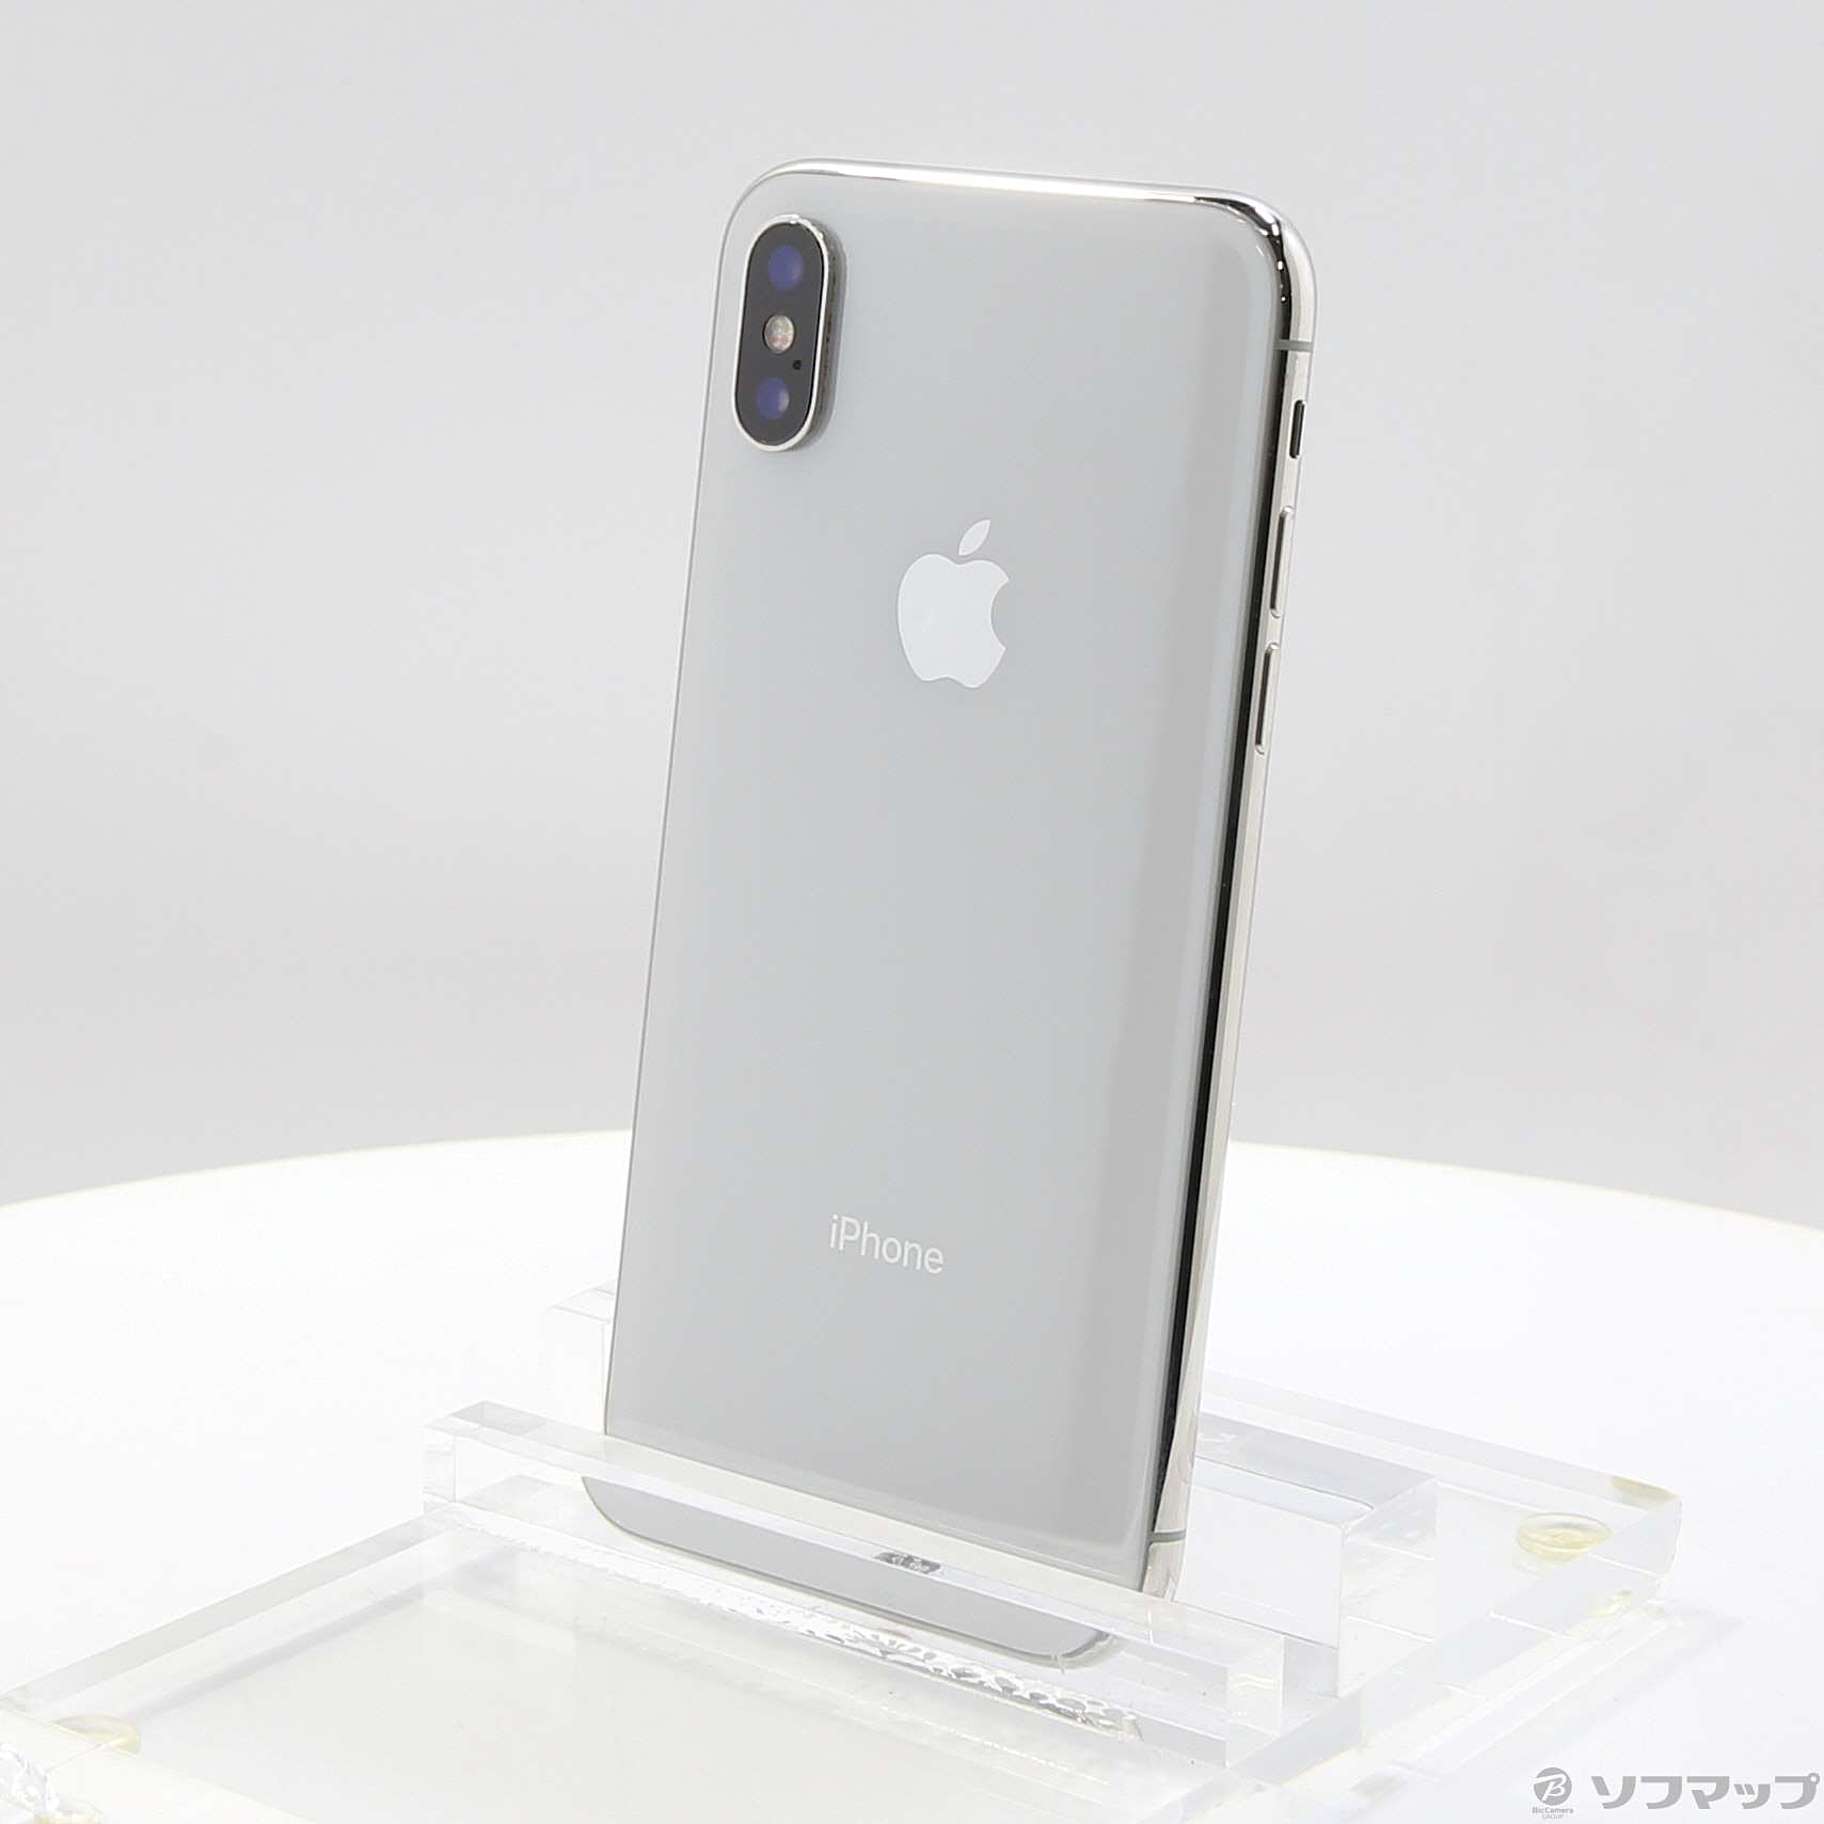 iPhonex 256gb silver